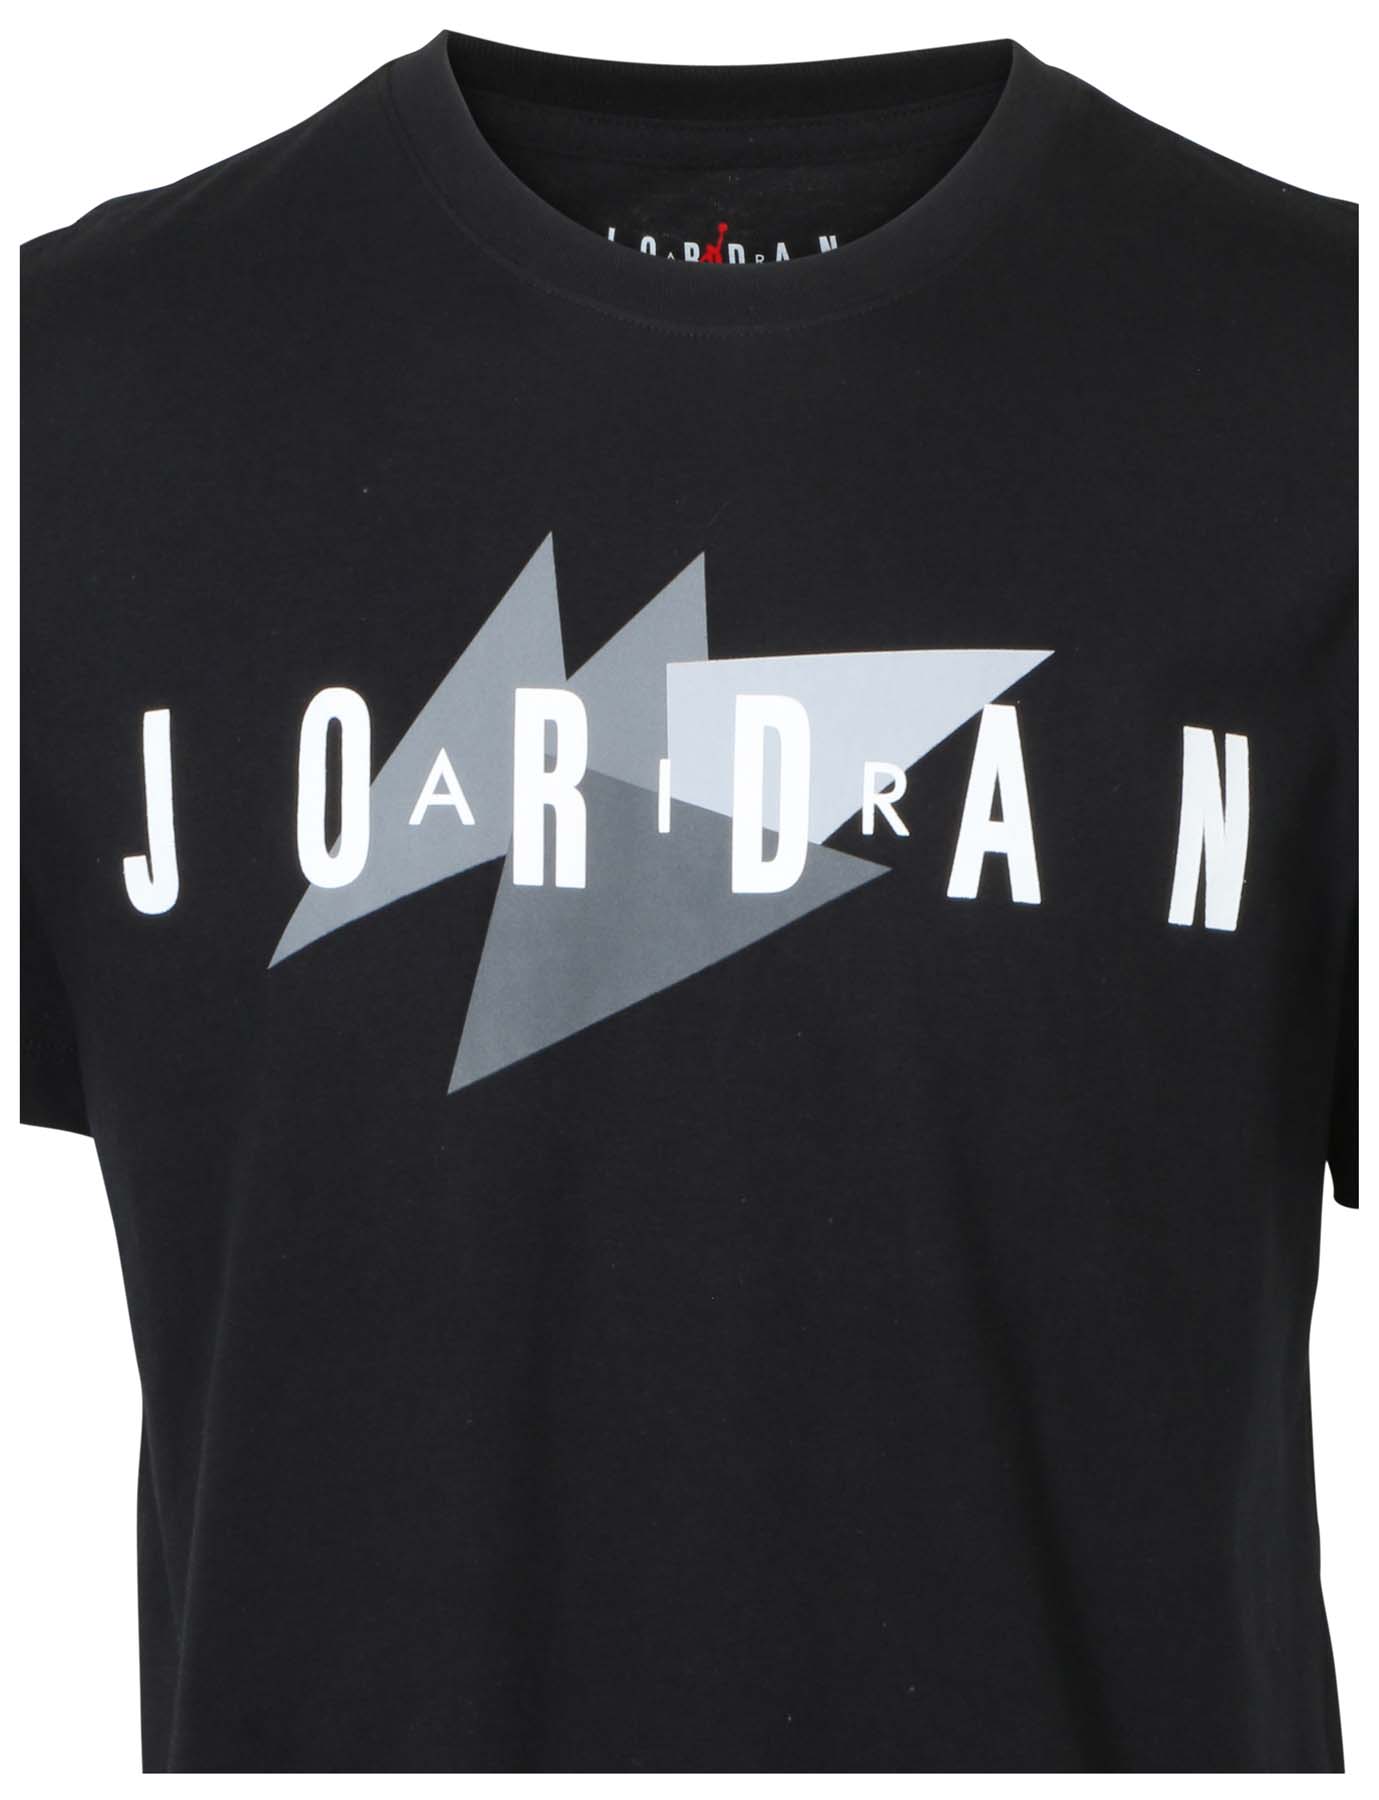 Jordan Men's Nike Air Graphic Tee | eBay